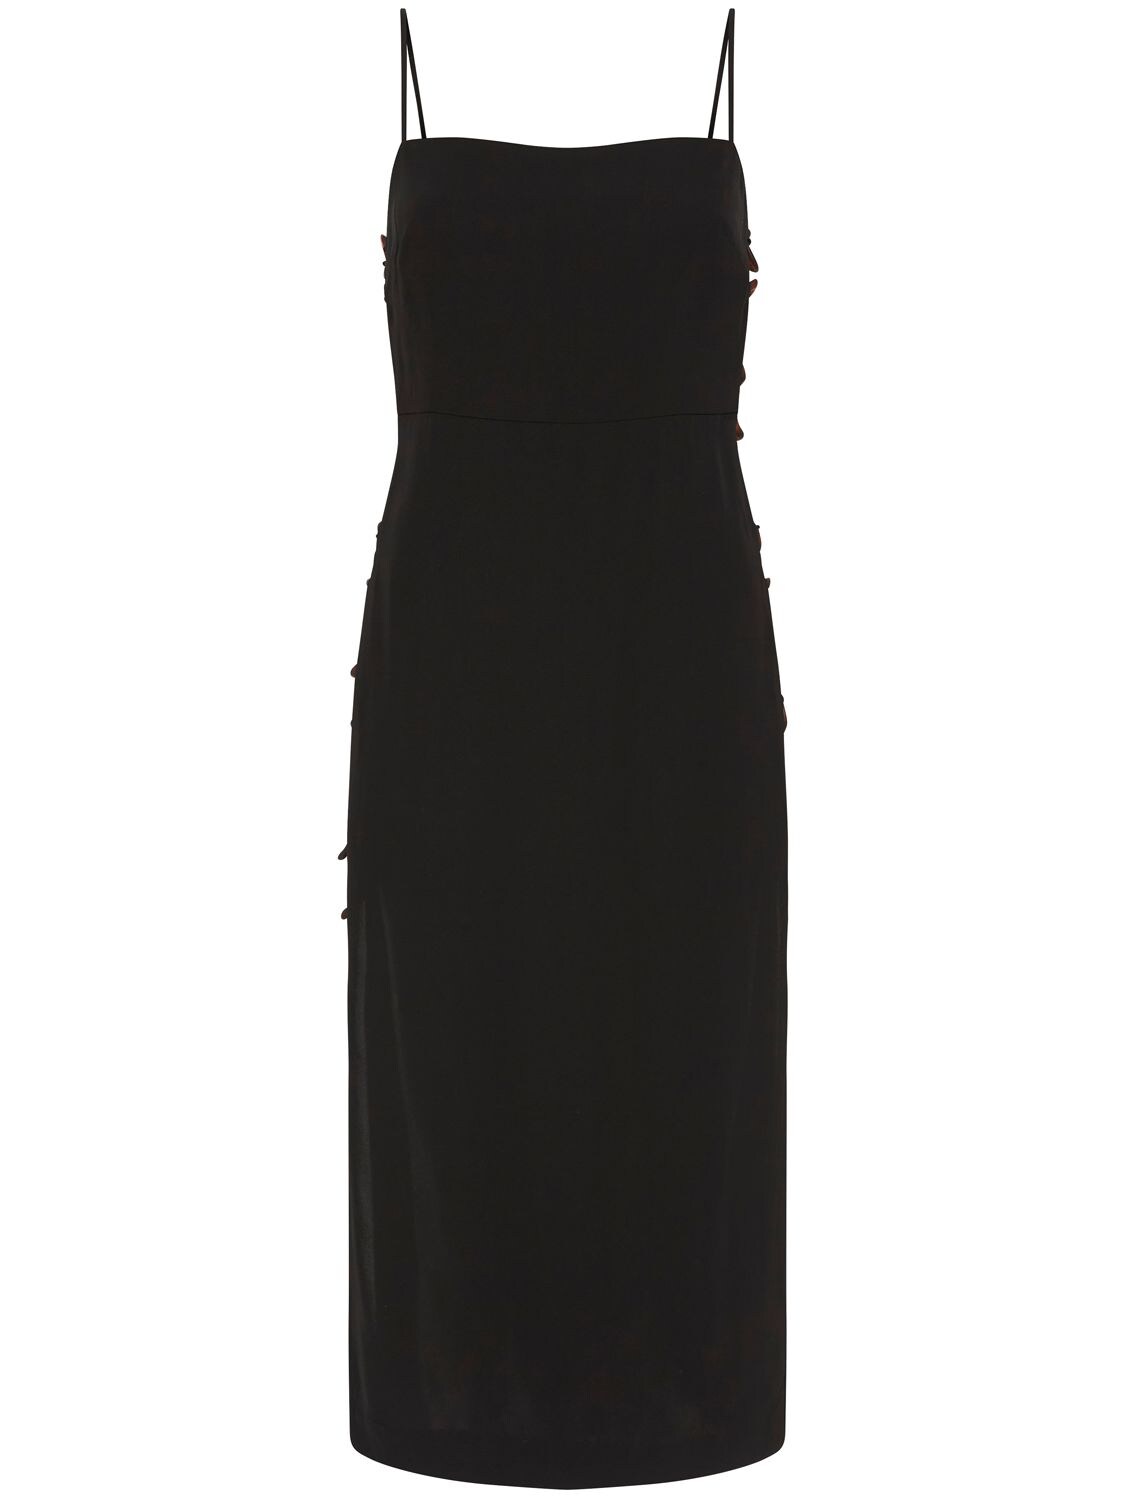 St.agni Midi Dress W/ Link Details In Black